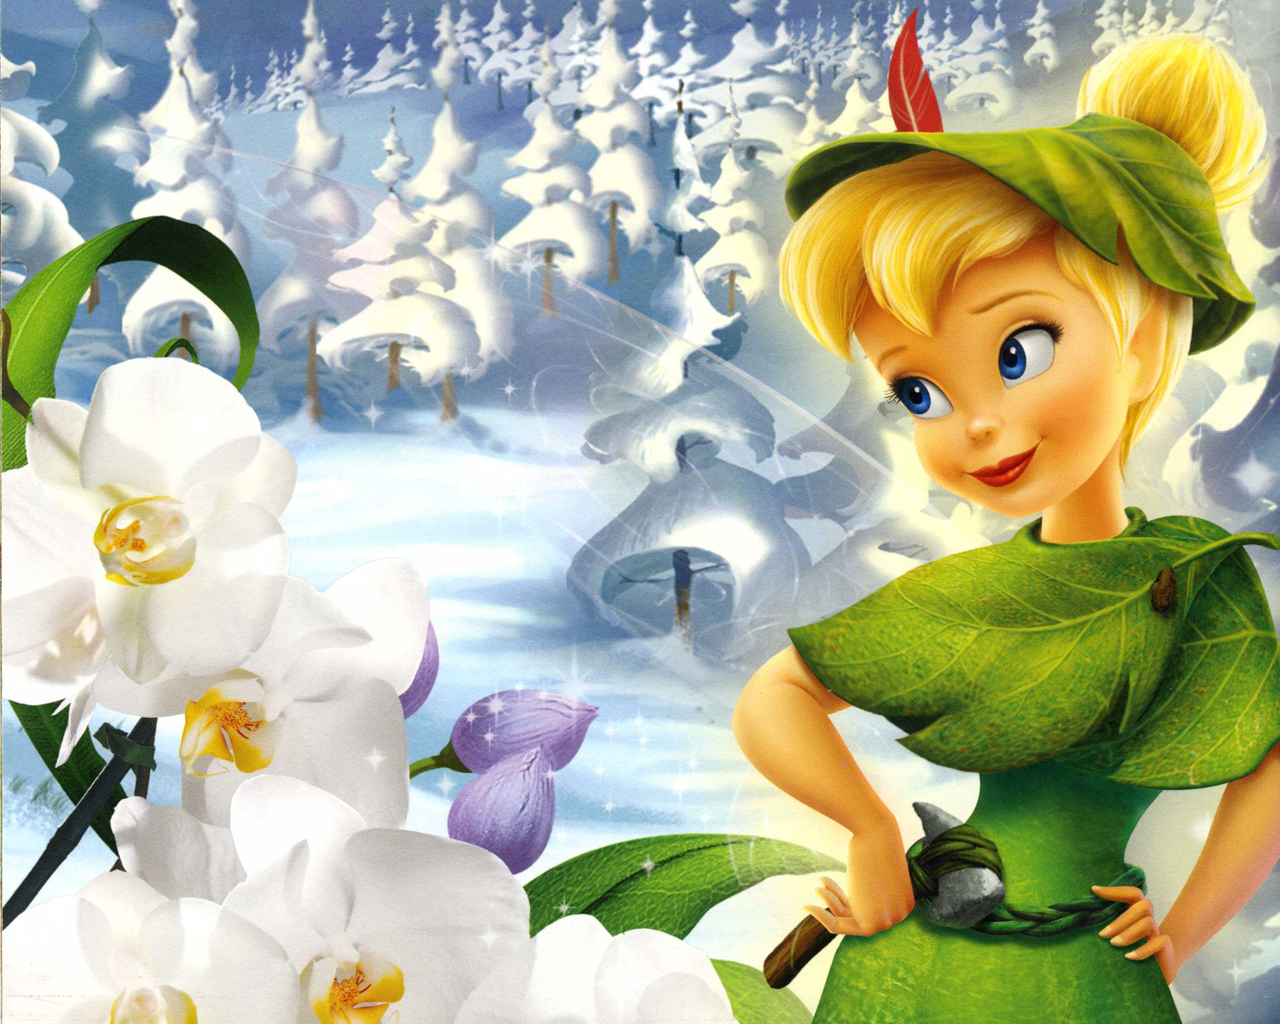 Tinkerbell là một nhân vật rất đặc biệt trong nguyên tác Peter Pan. Với vẻ đẹp của một nàng tiên và tính cách đáng yêu, Tinkerbell thu hút sự quan tâm của nhiều người. Hãy xem những hình ảnh đầy màu sắc về Tinkerbell và khám phá thế giới đầy phép thuật của nàng tiên này.